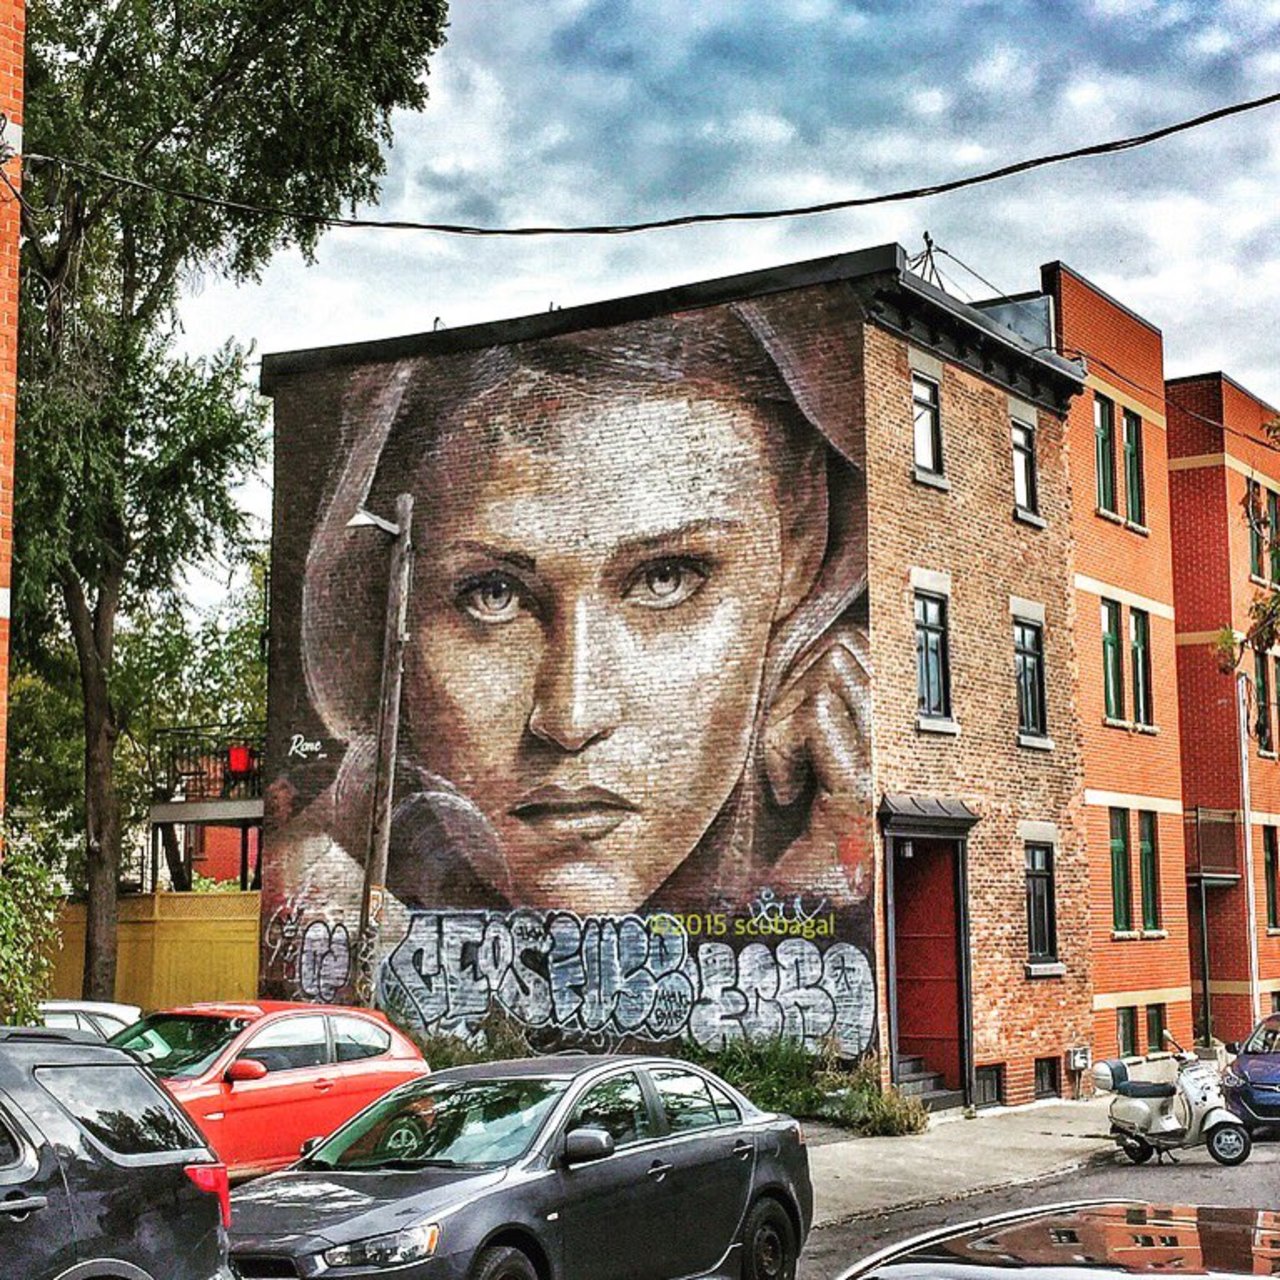 ShaniaSuperlove: The Walkflower | #Montreal #art #graffiti #streetart #streetphotography https://t.co/Tzvpn1r0Ea https://goo.gl/t4fpx2